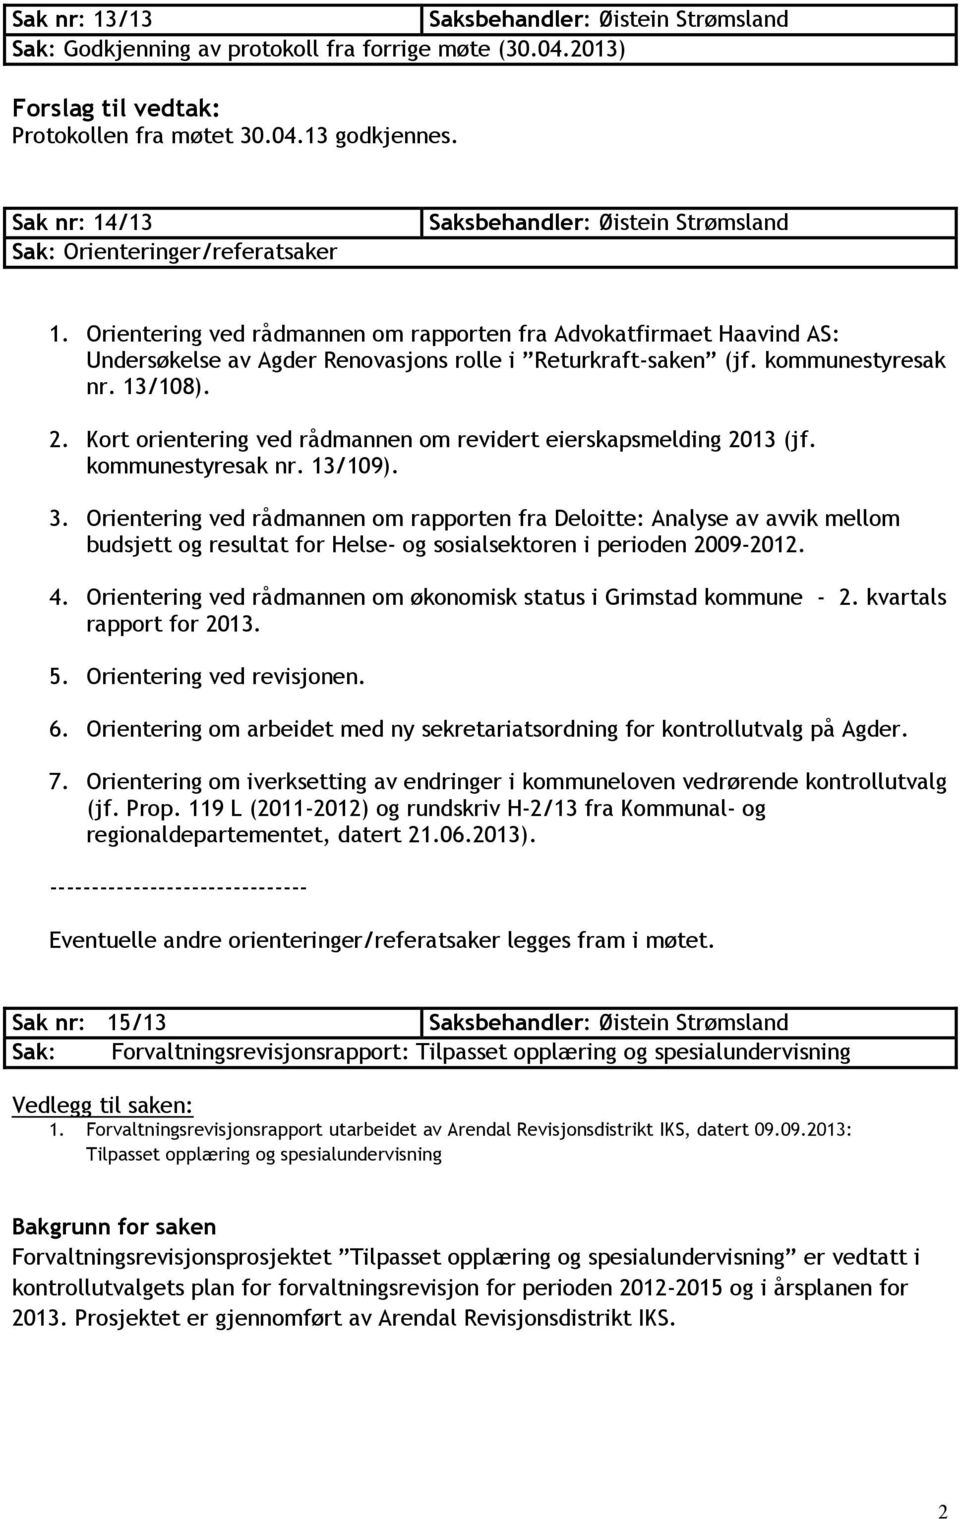 Kort orientering ved rådmannen om revidert eierskapsmelding 2013 (jf. kommunestyresak nr. 13/109). 3.